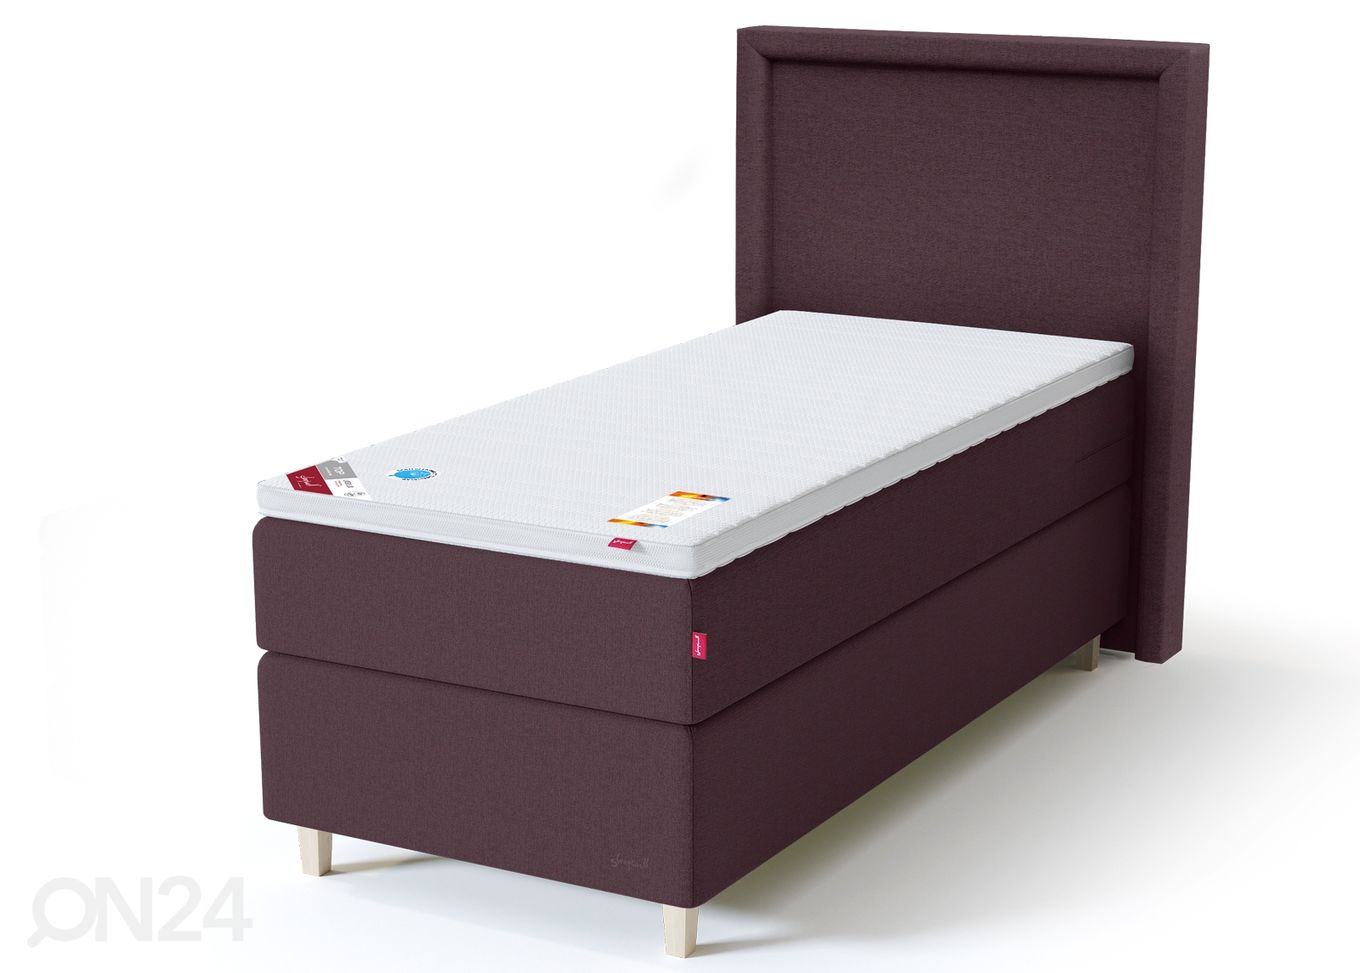 Sleepwell Black континентальная кровать 120x200 cm увеличить